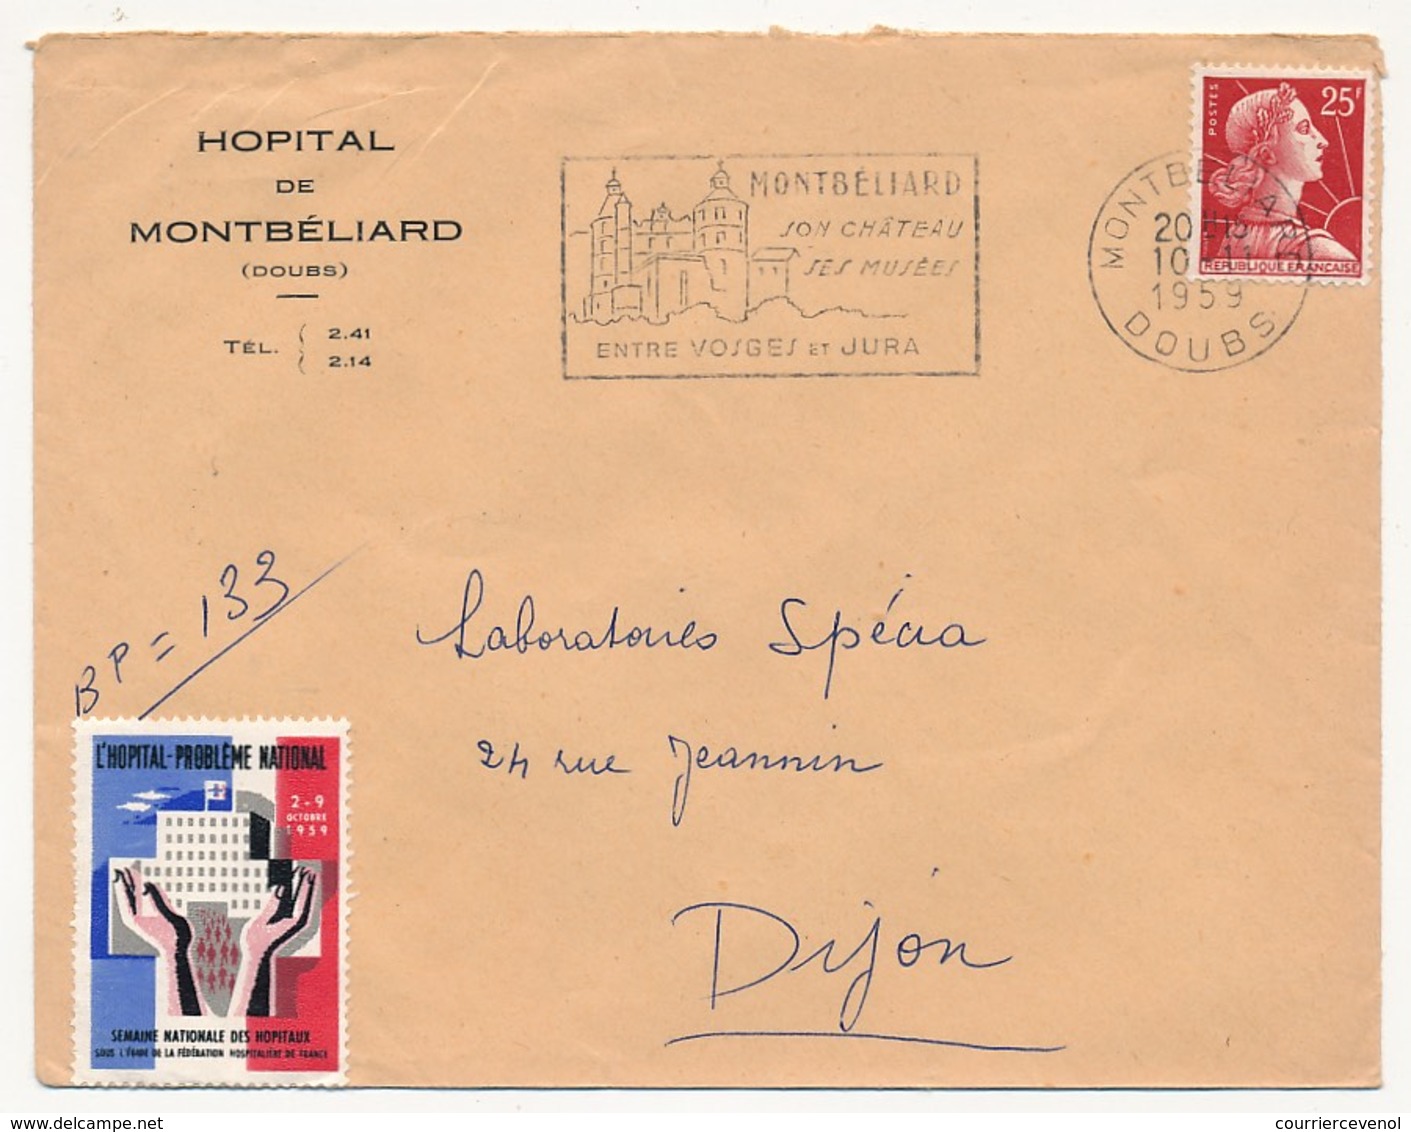 FRANCE - Enveloppe Affr 25F Muller Avec Vignette "L'Hopital Problème National" - Hopital De Montbéliard (Doubs) 1959 - Brieven En Documenten